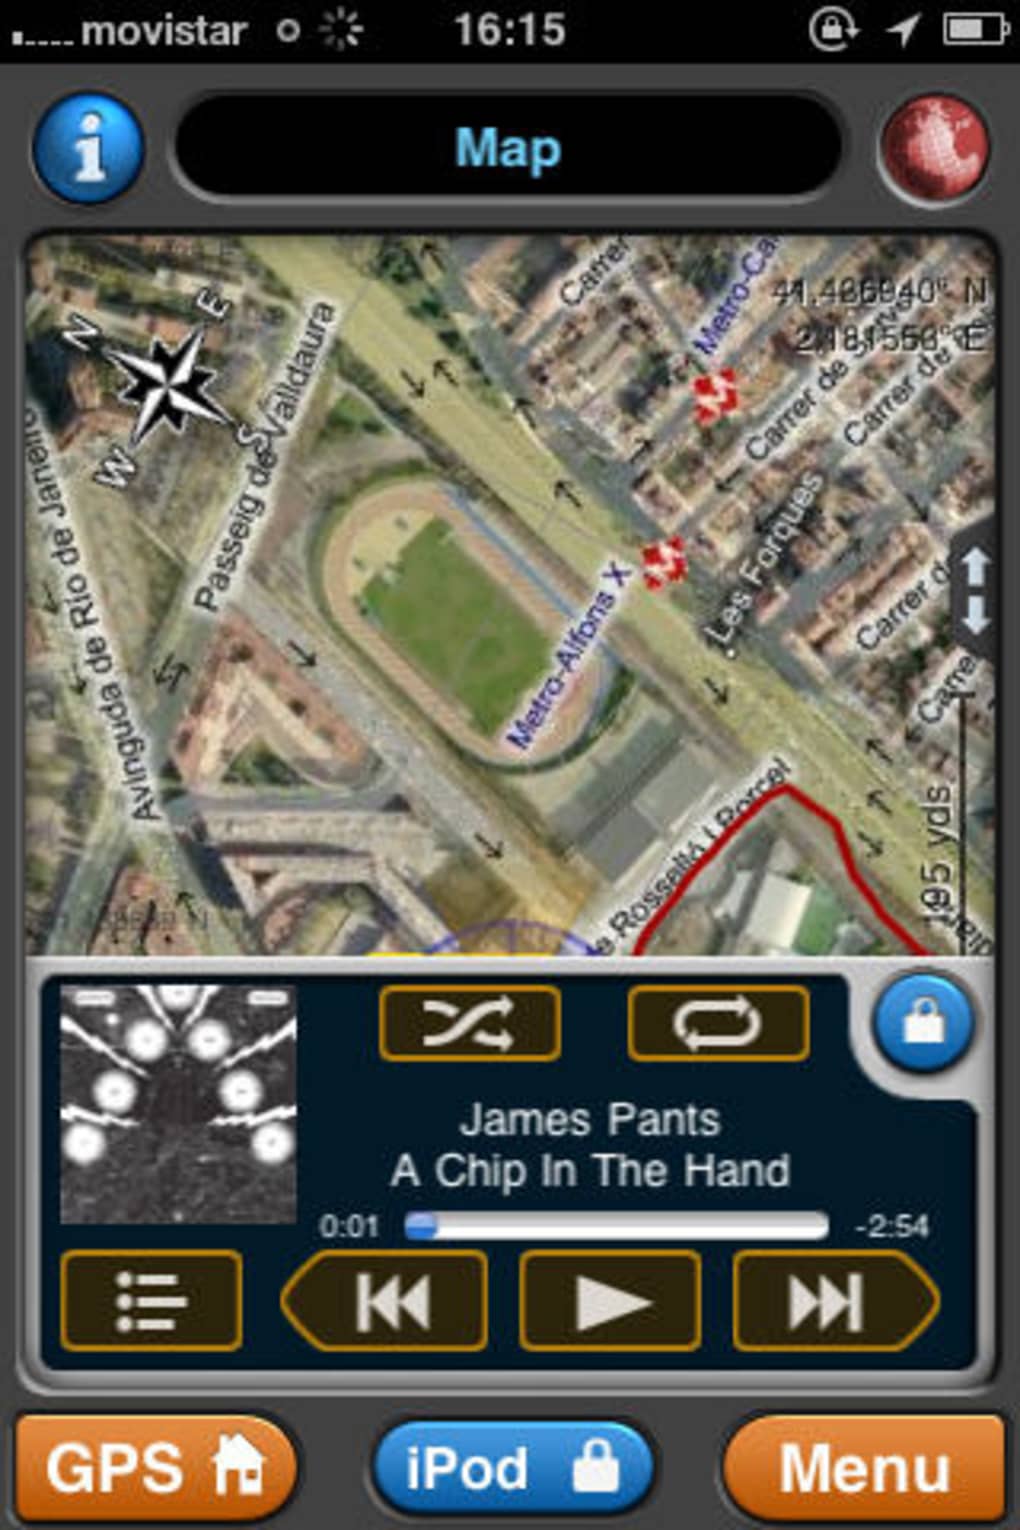 Taktil sans logo gave MotionX GPS for iPhone - Download